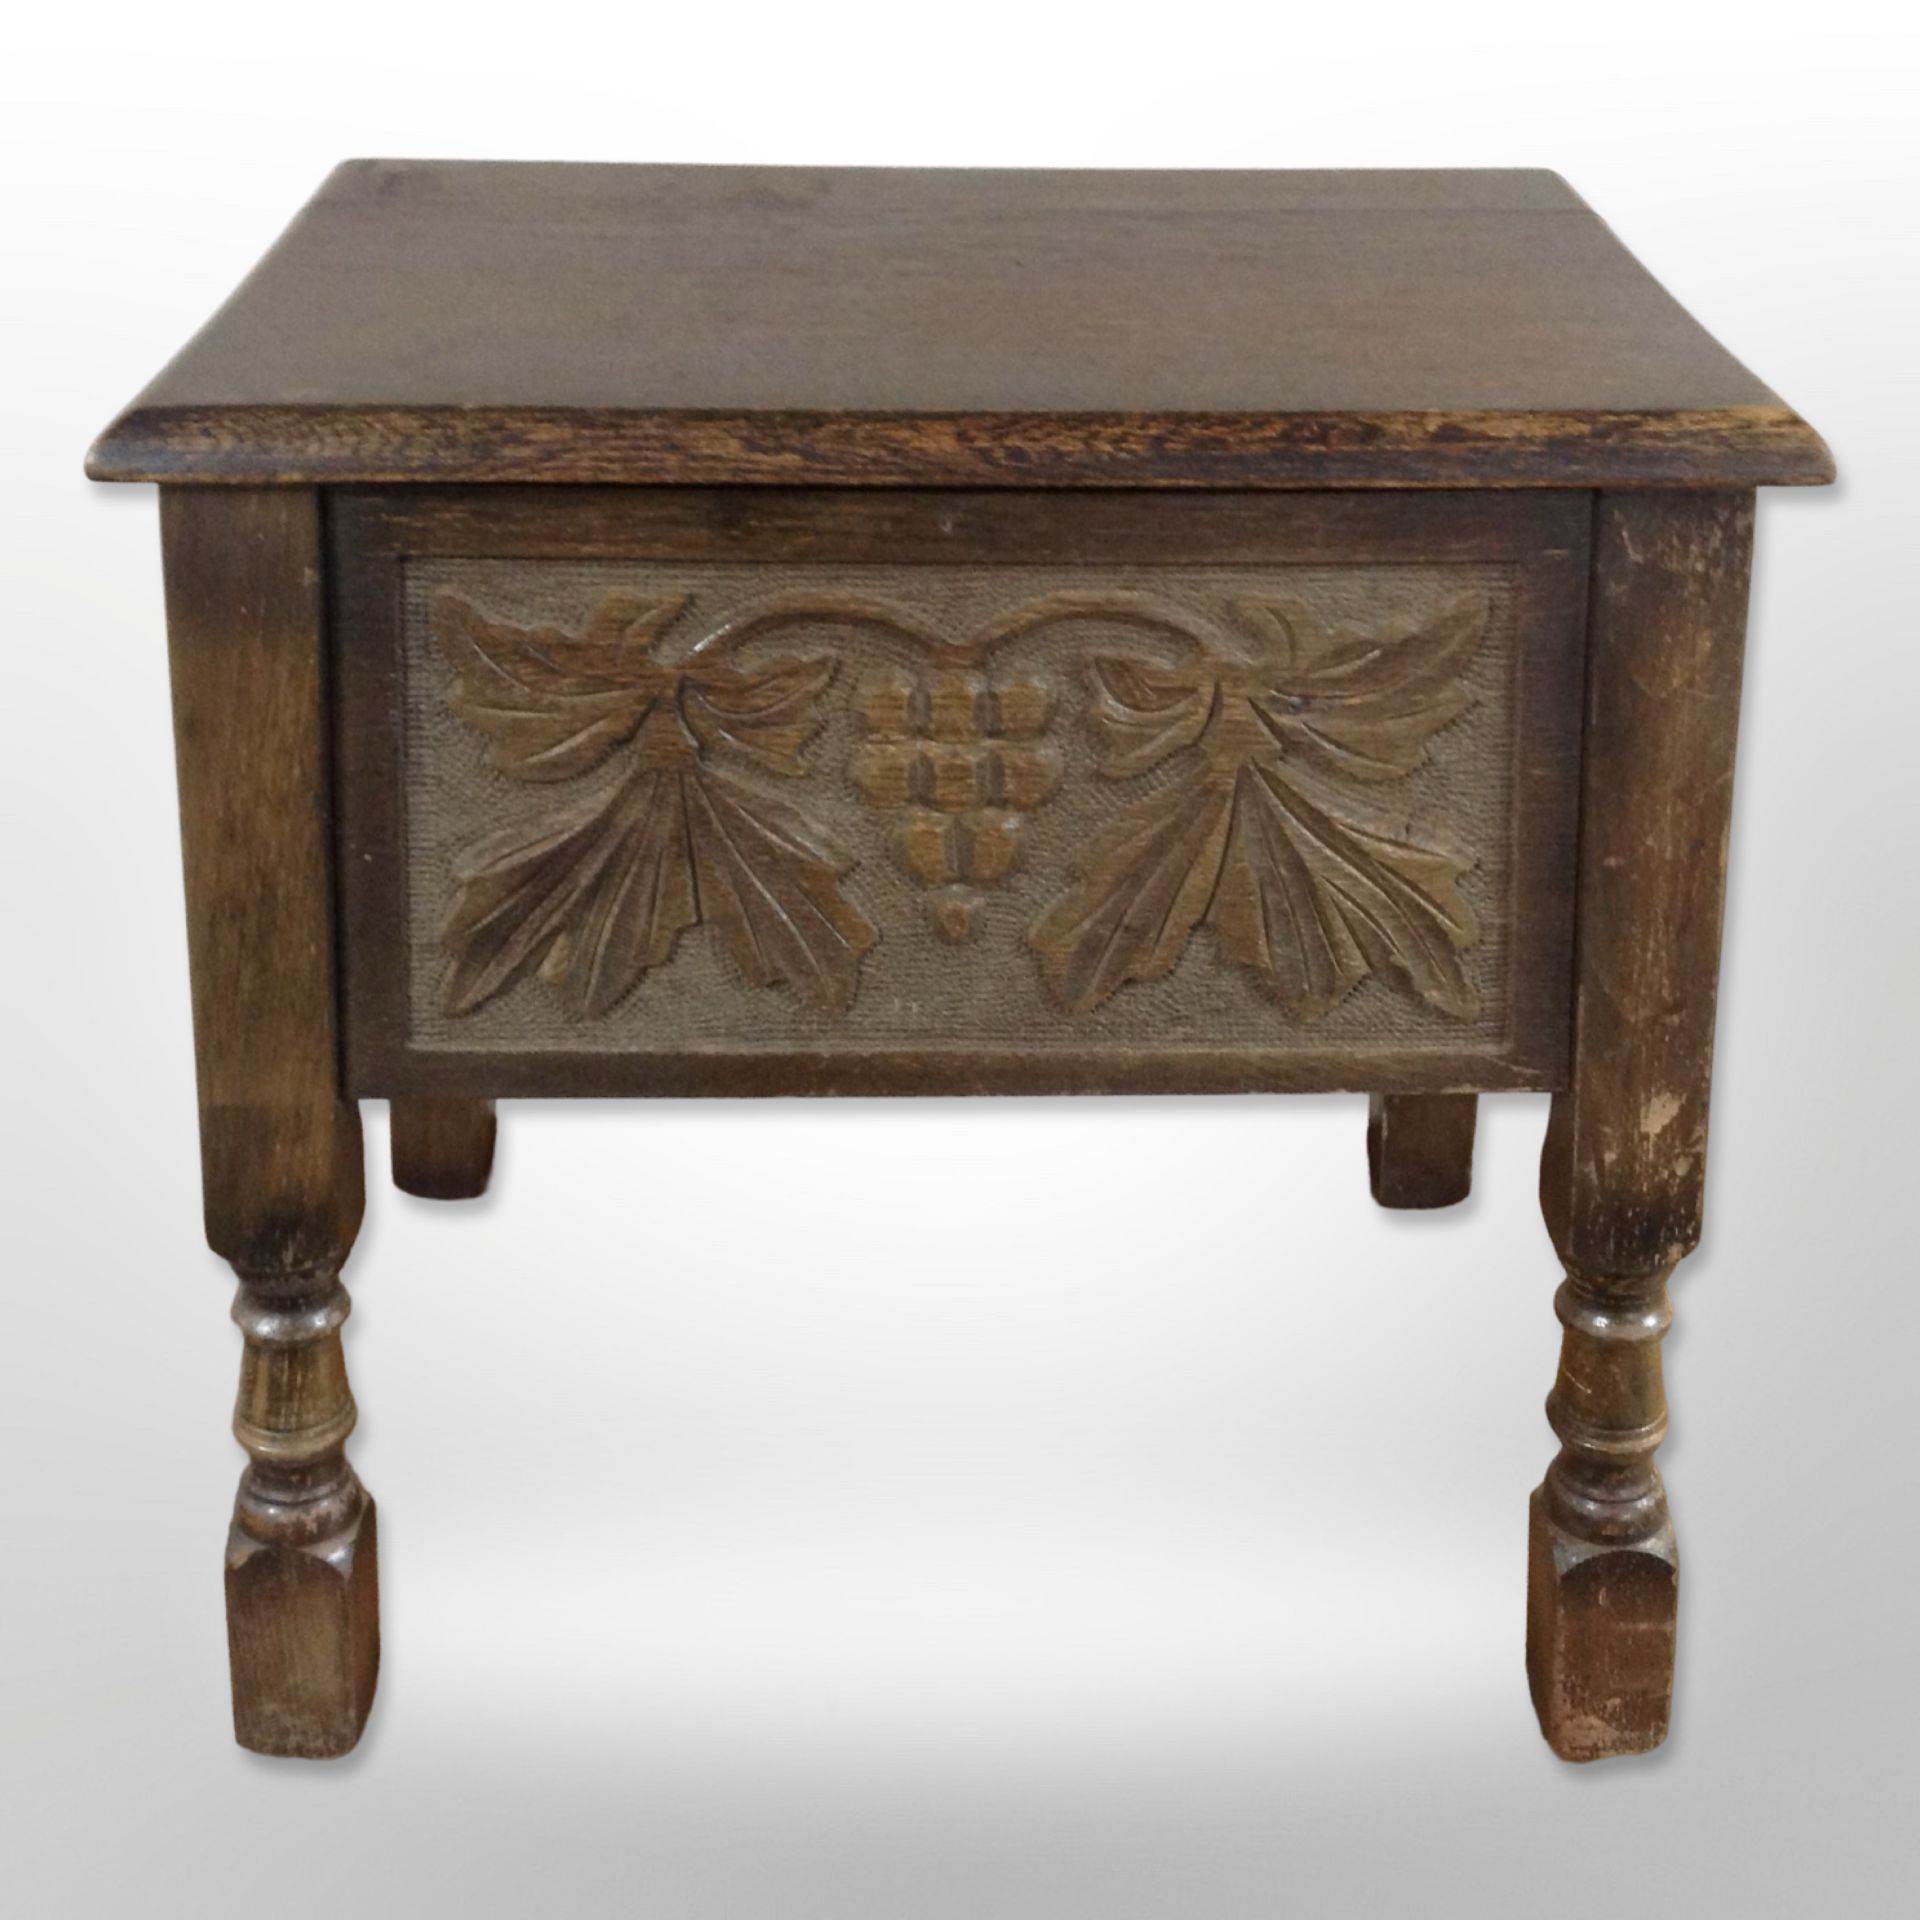 A carved oak work box,